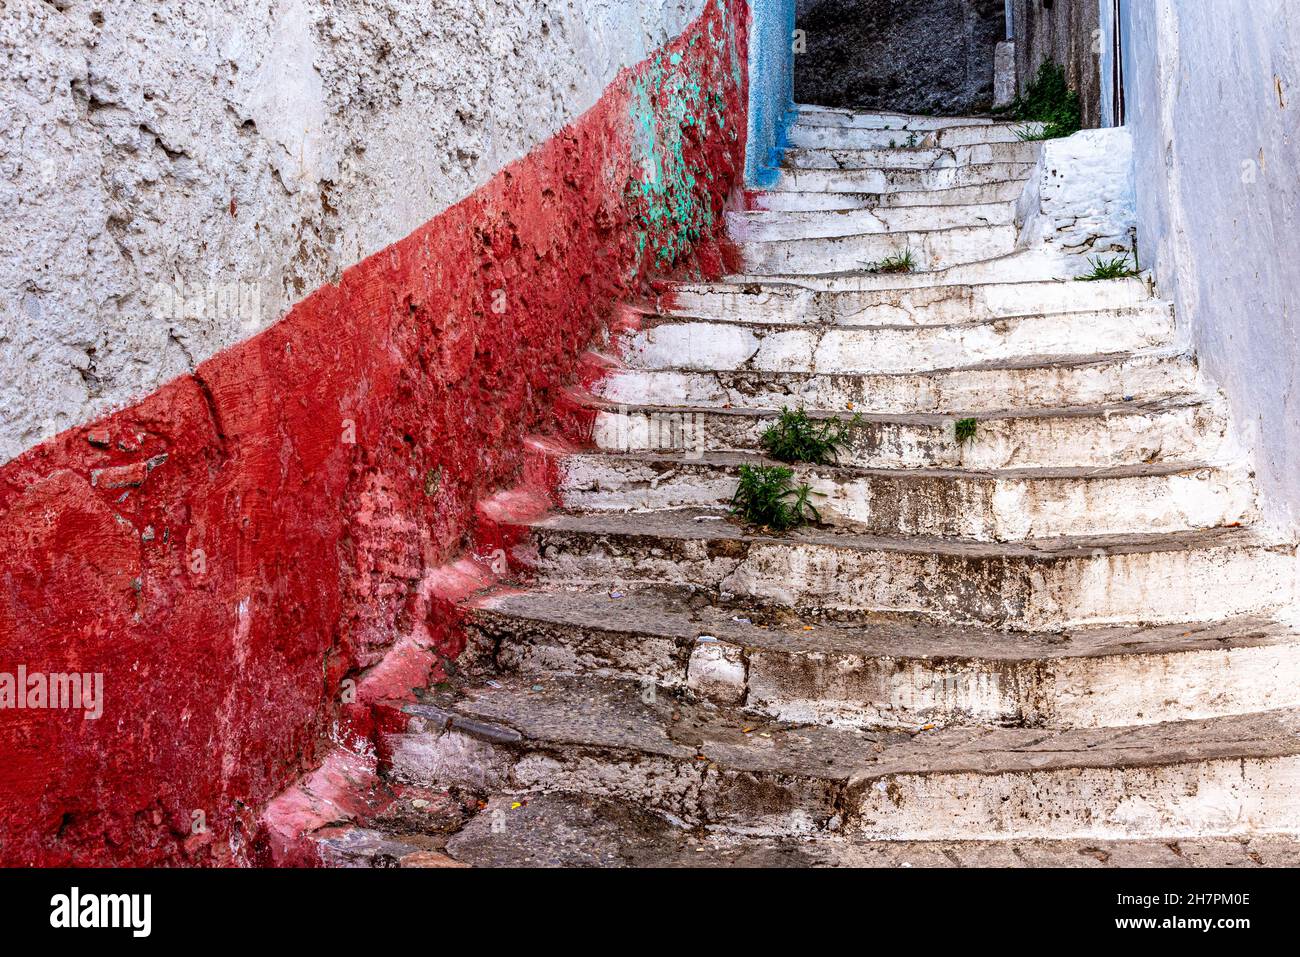 Dans la médina de Tétouan au Maroc.Un vieux escalier monte jusqu'à une maison entre les murs peints dans des couleurs vives, rouge et blanc Banque D'Images